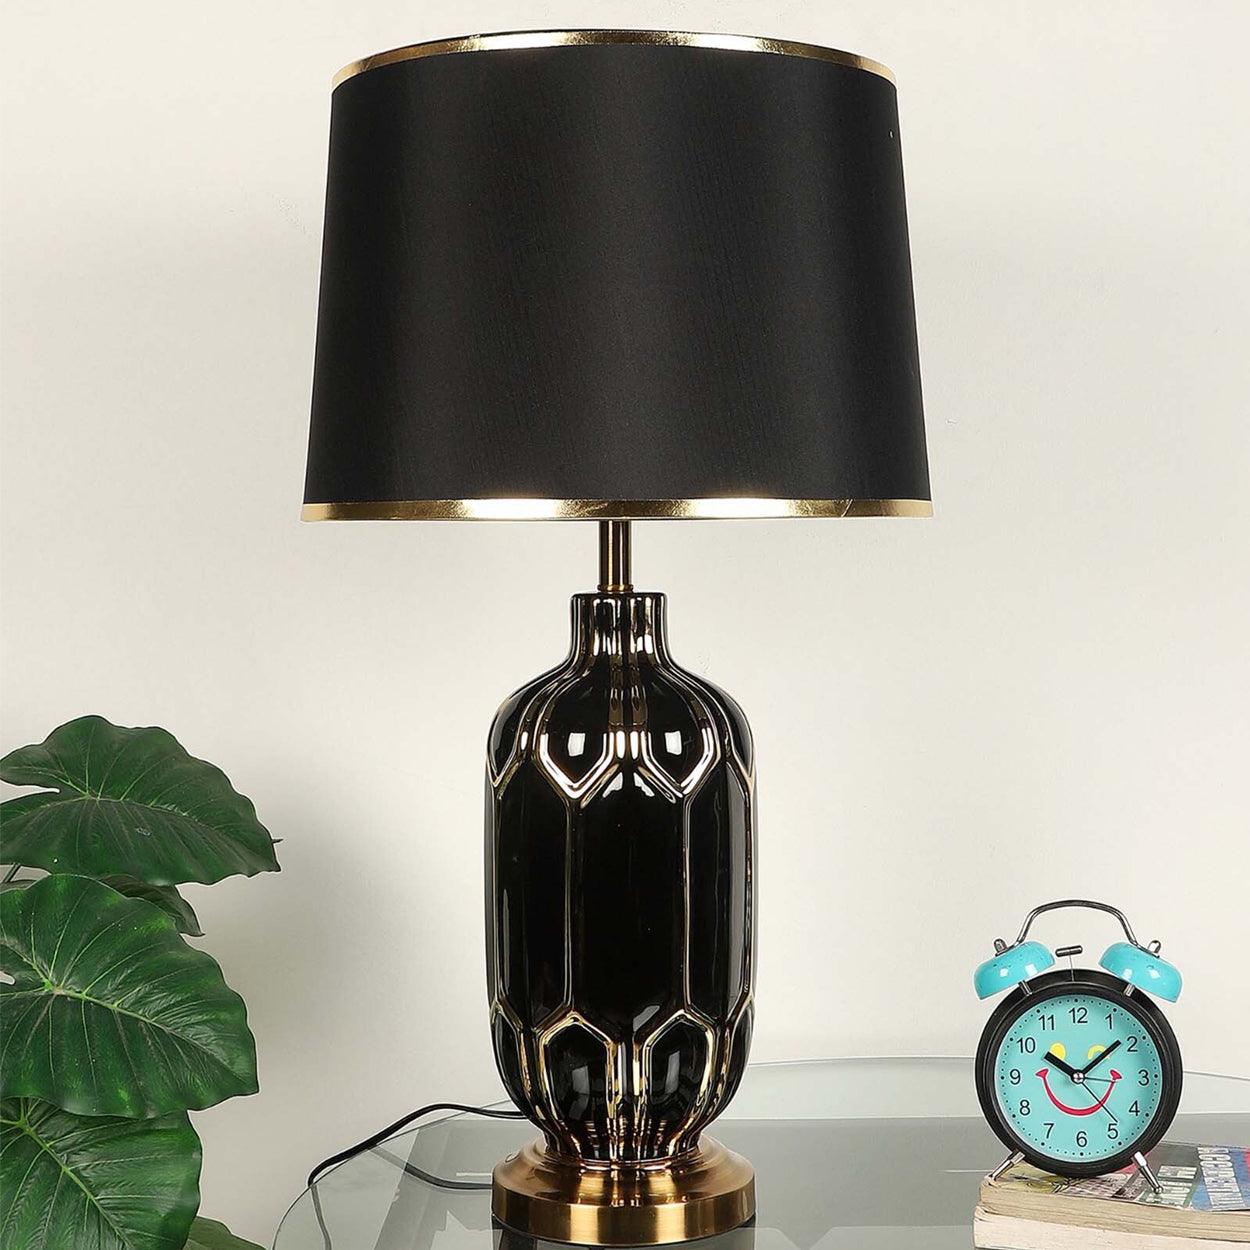 BLEEN CERAMIC TABLE LAMP BEDSIDE LAMP - Ankur Lighting